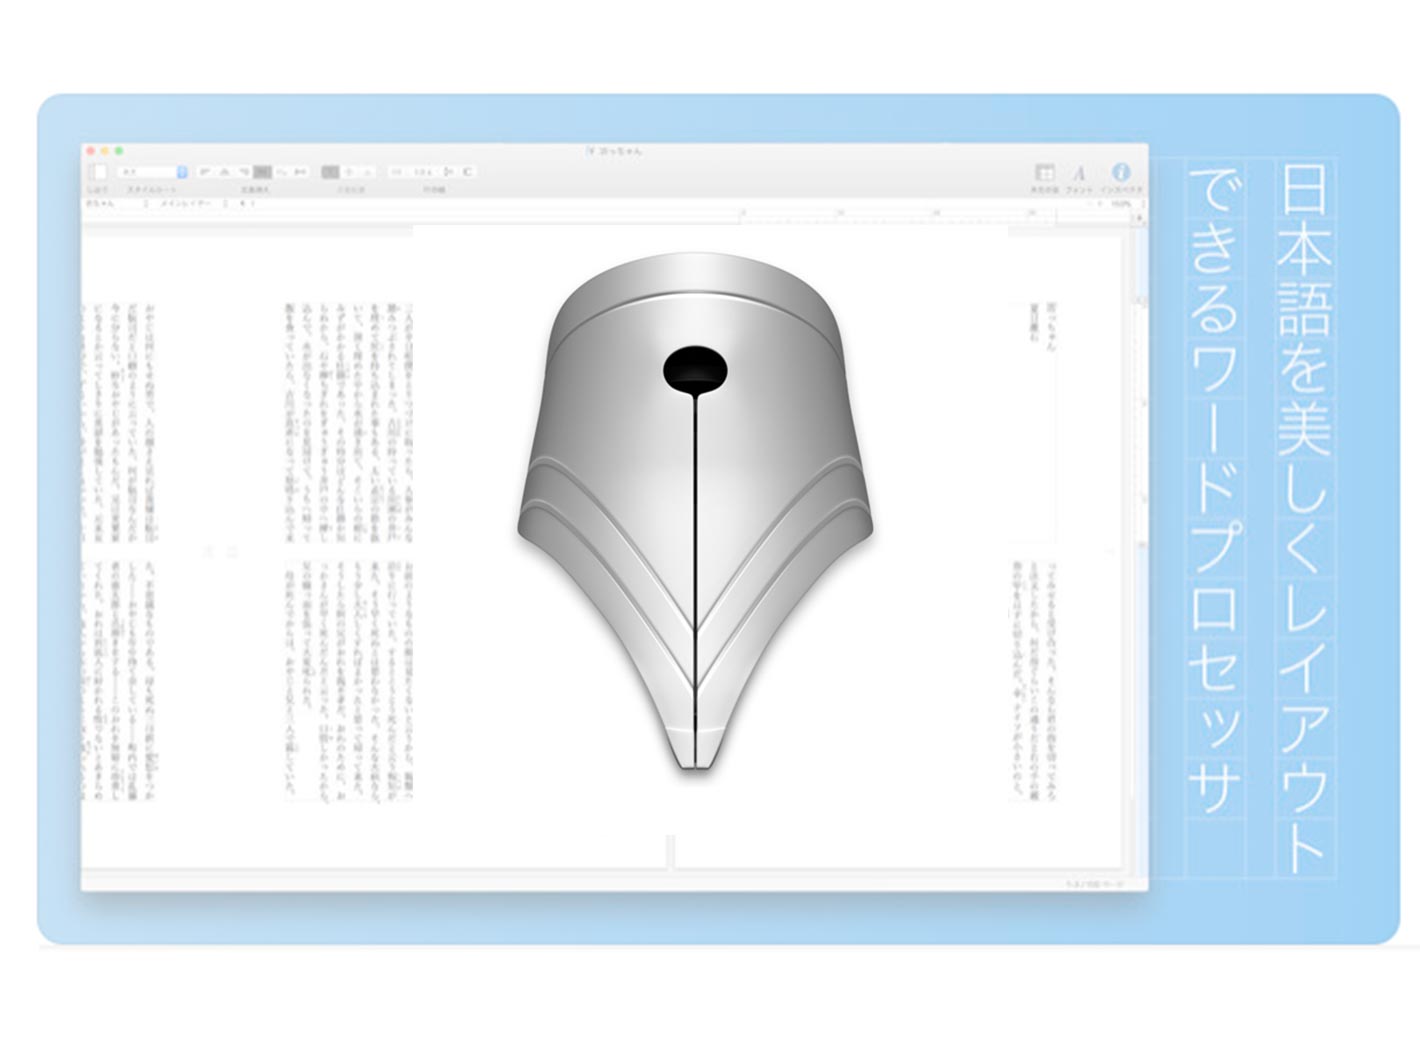 物書堂、「自動保存」「バージョンを戻す」に対応しアイコンを刷新したMac向け日本語ワープロアプリ「egword Universal 2.1.8」リリース